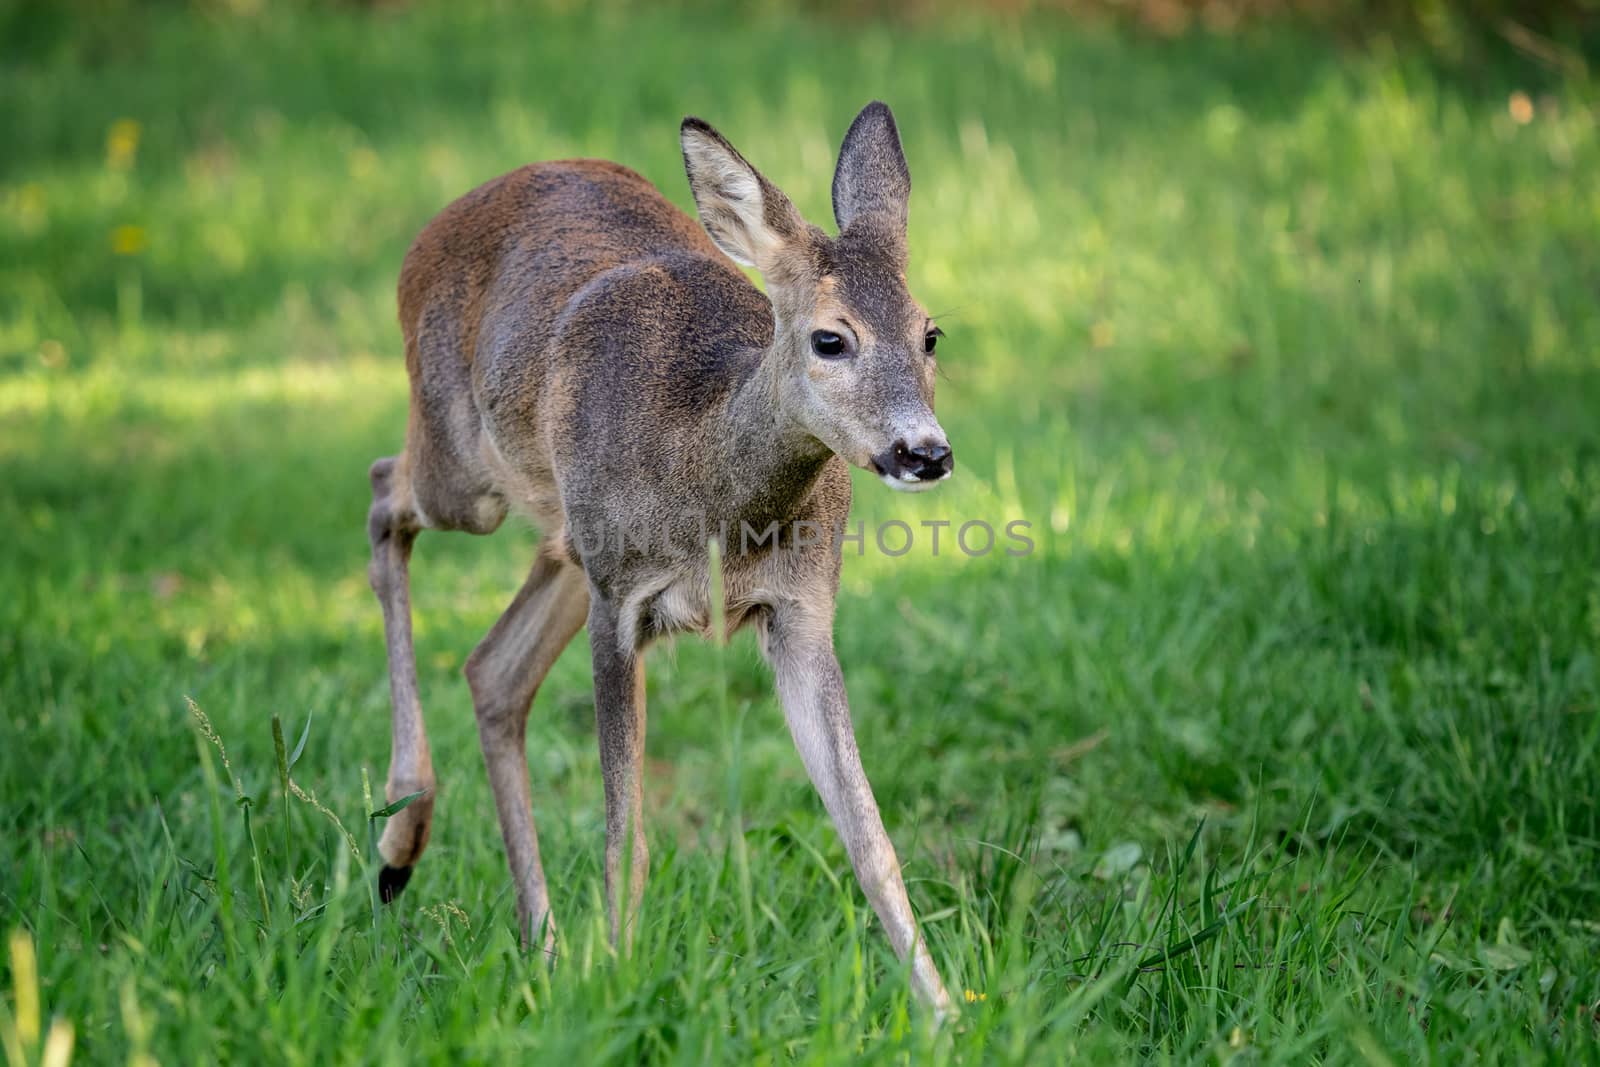 Running doe deer in grass, Capreolus capreolus. Wild roe deer in spring nature.